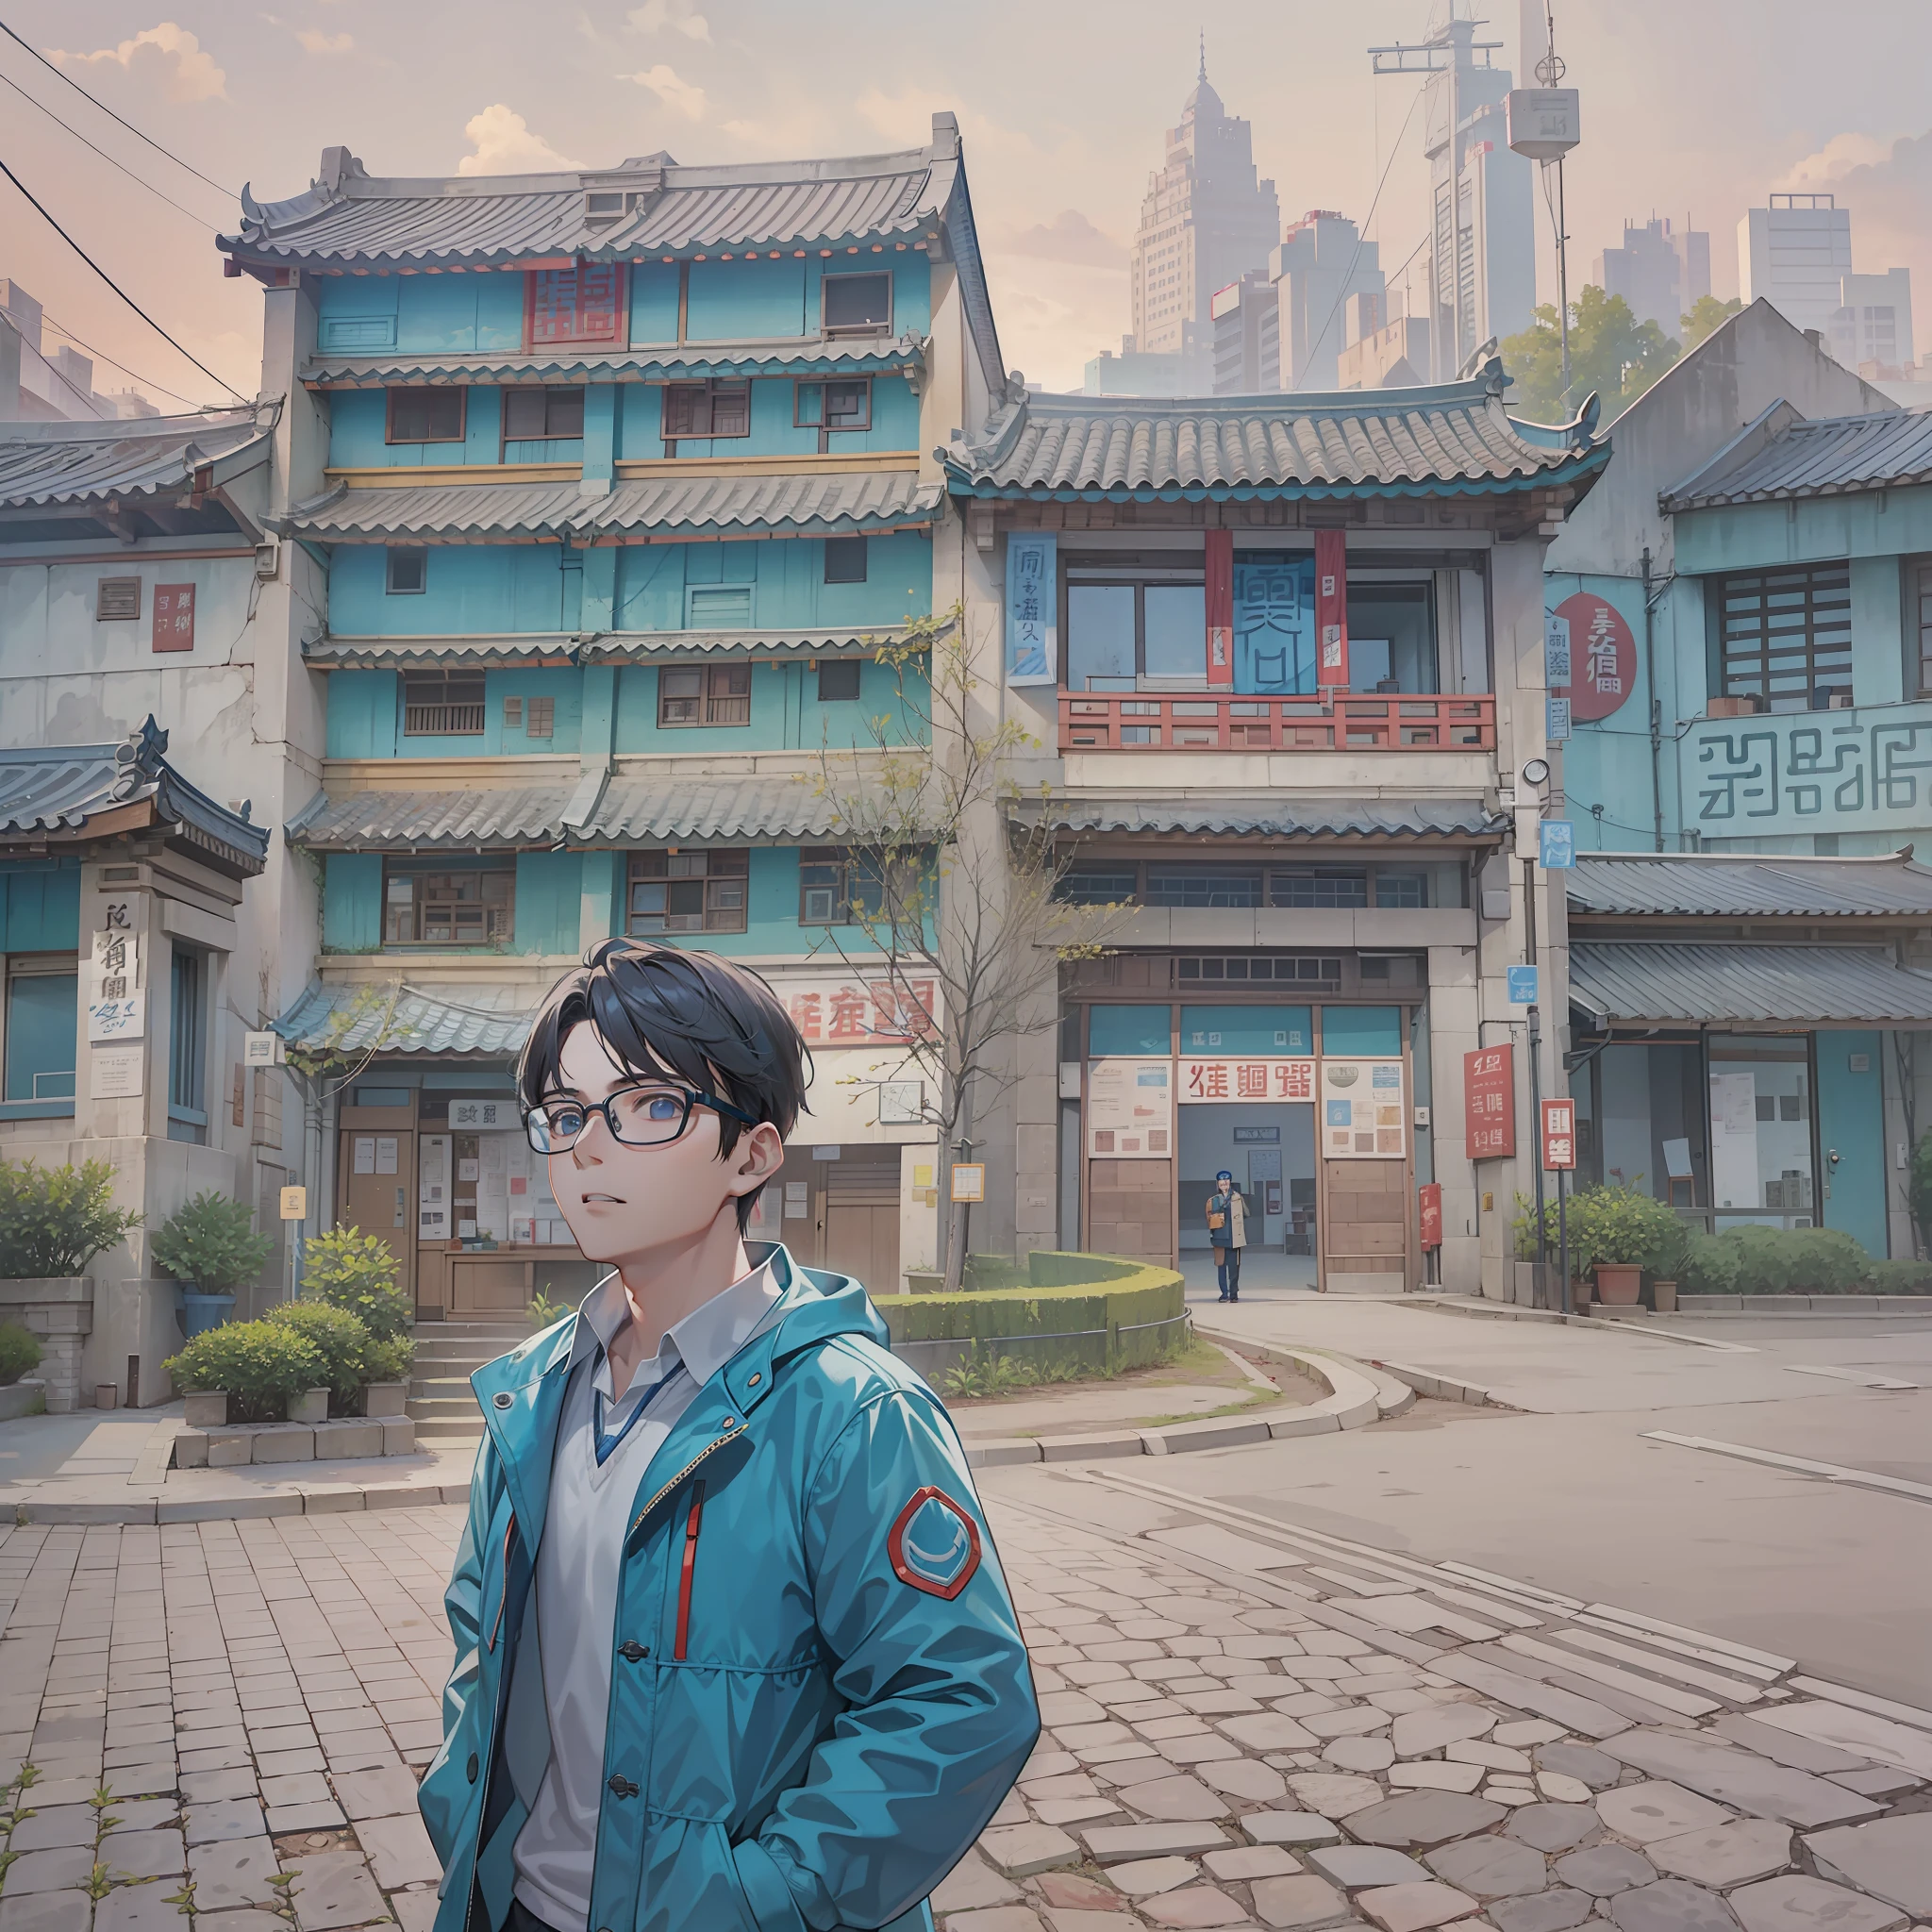 Wearing a blue jacket、A bespectacled Arafeld man stands in front of a building, qi sheng luo, Li Zixin, author li zhang, huifeng huang, guangjian huang, xiang duan, xintong chen, Leng Jun, lin hsiang, Zhang Pengzhen, xiaofan zhang, yintion j - jiang geping